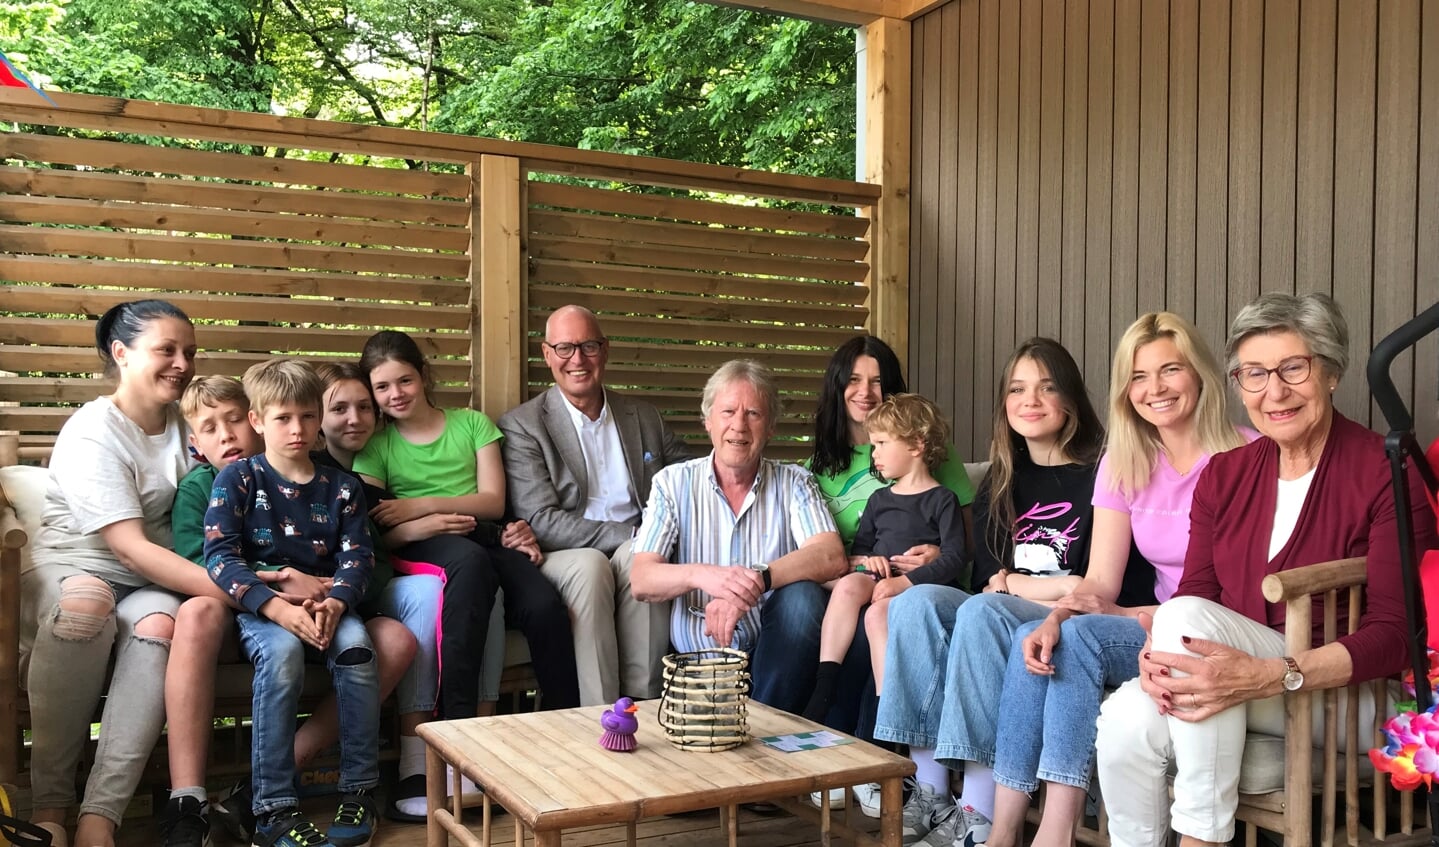 De Oekraïense vluchtelingenfamilies Tveritina, Balandiak en Shenkevych, gehuisvest in de Thijmse Berg in Rhenen reageren verheugd op de actie. In het midden links Wim Werkman, rechts in het midden René van Holsteijn.